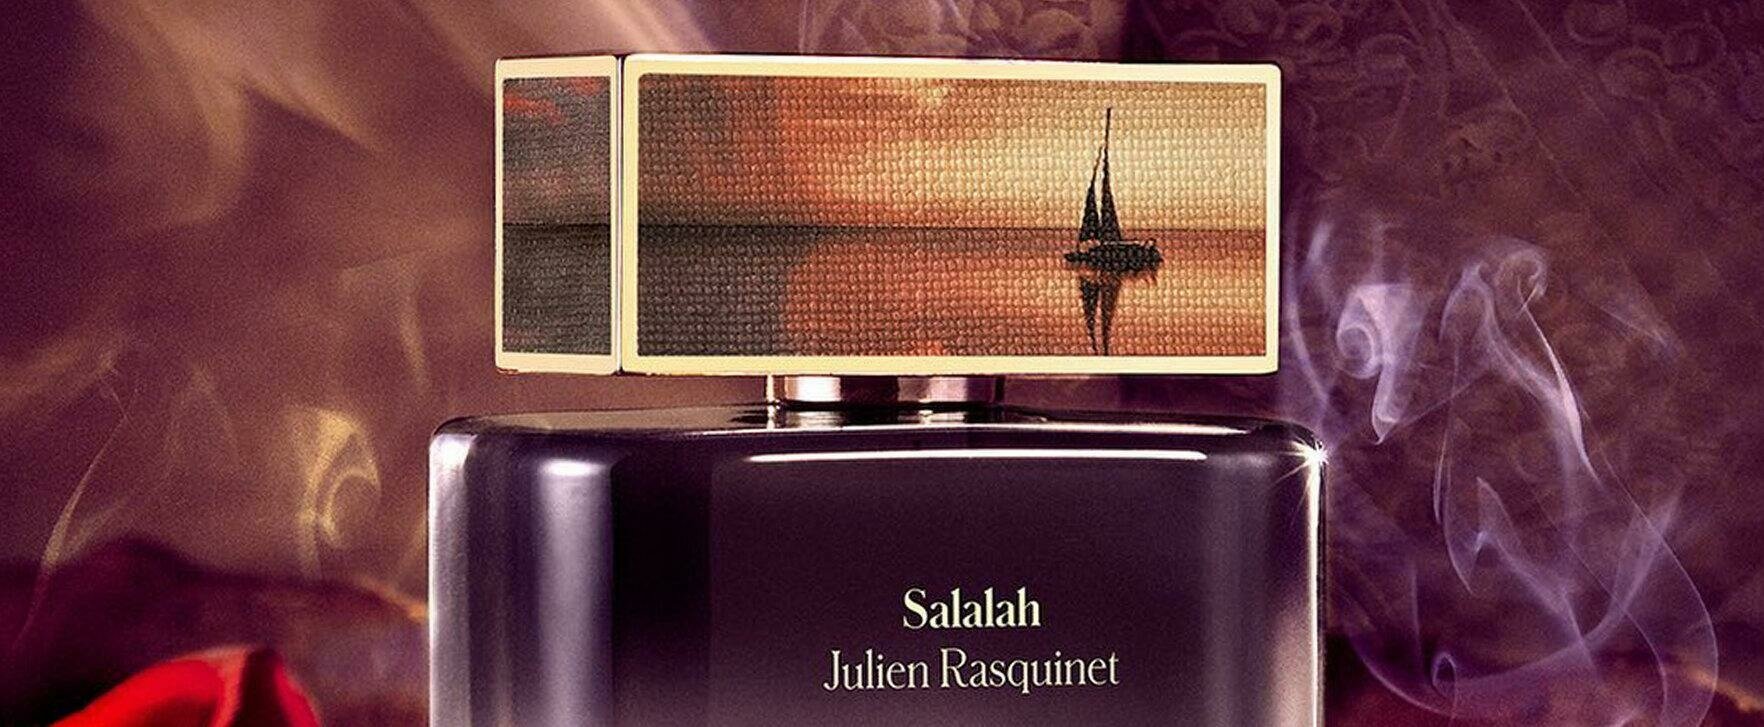 “Contes de Parfums - Salalah”: A Fragrance Designed To Capture the Soul of the Coastal City of Salalah